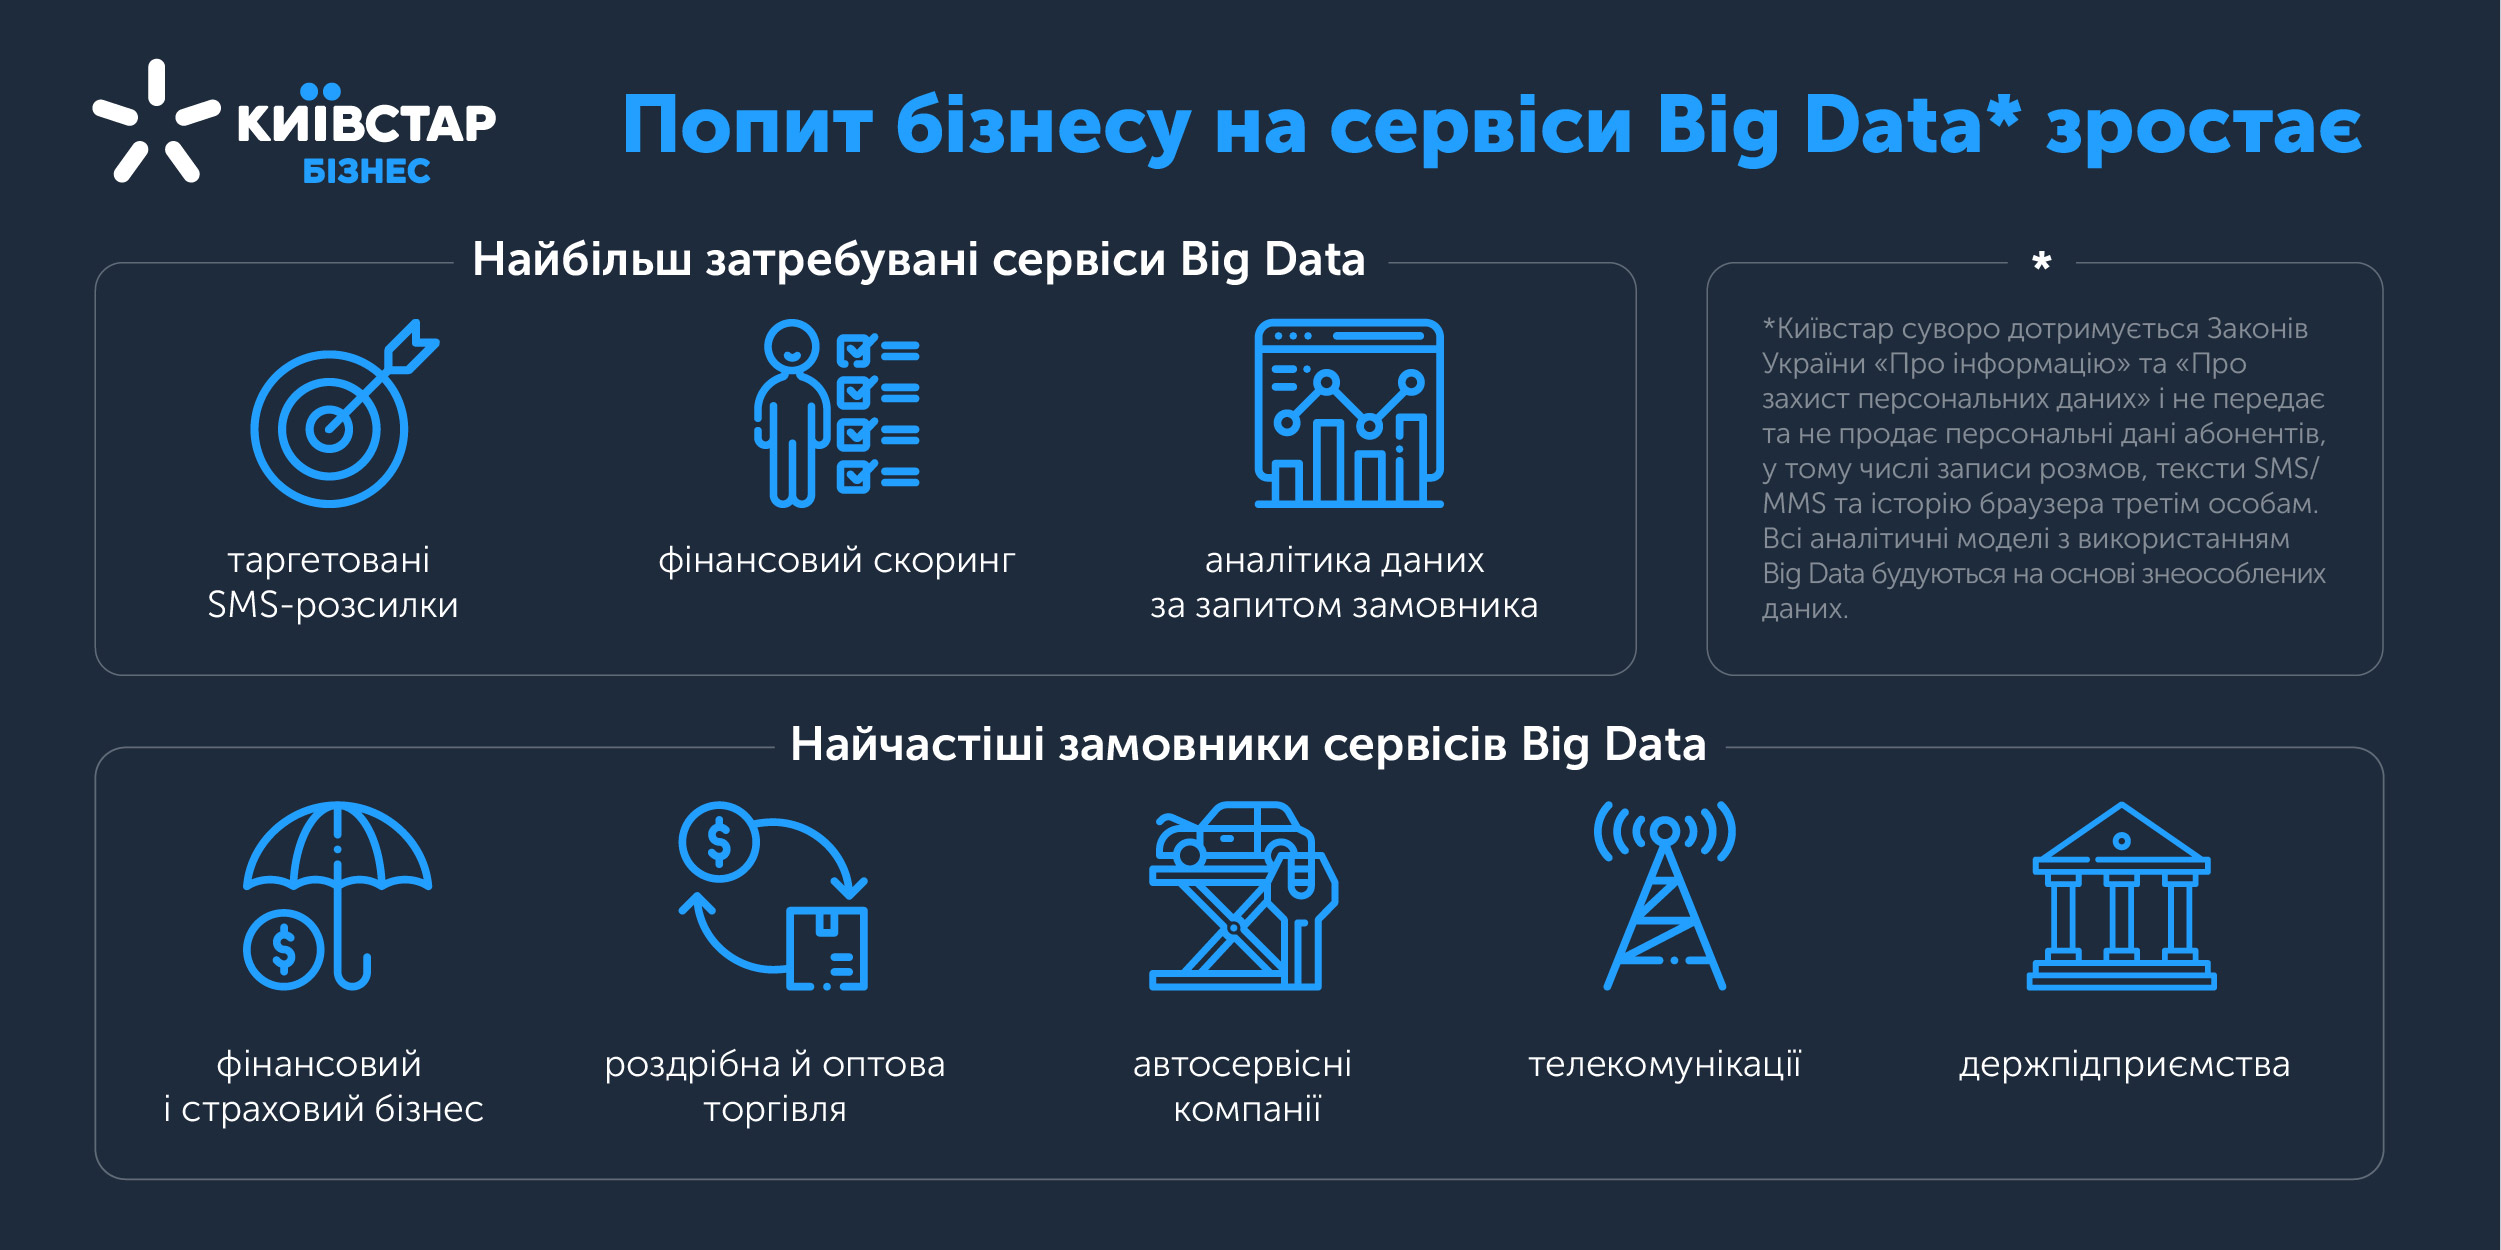 Киевстар: спрос на Big Data сервисы растет